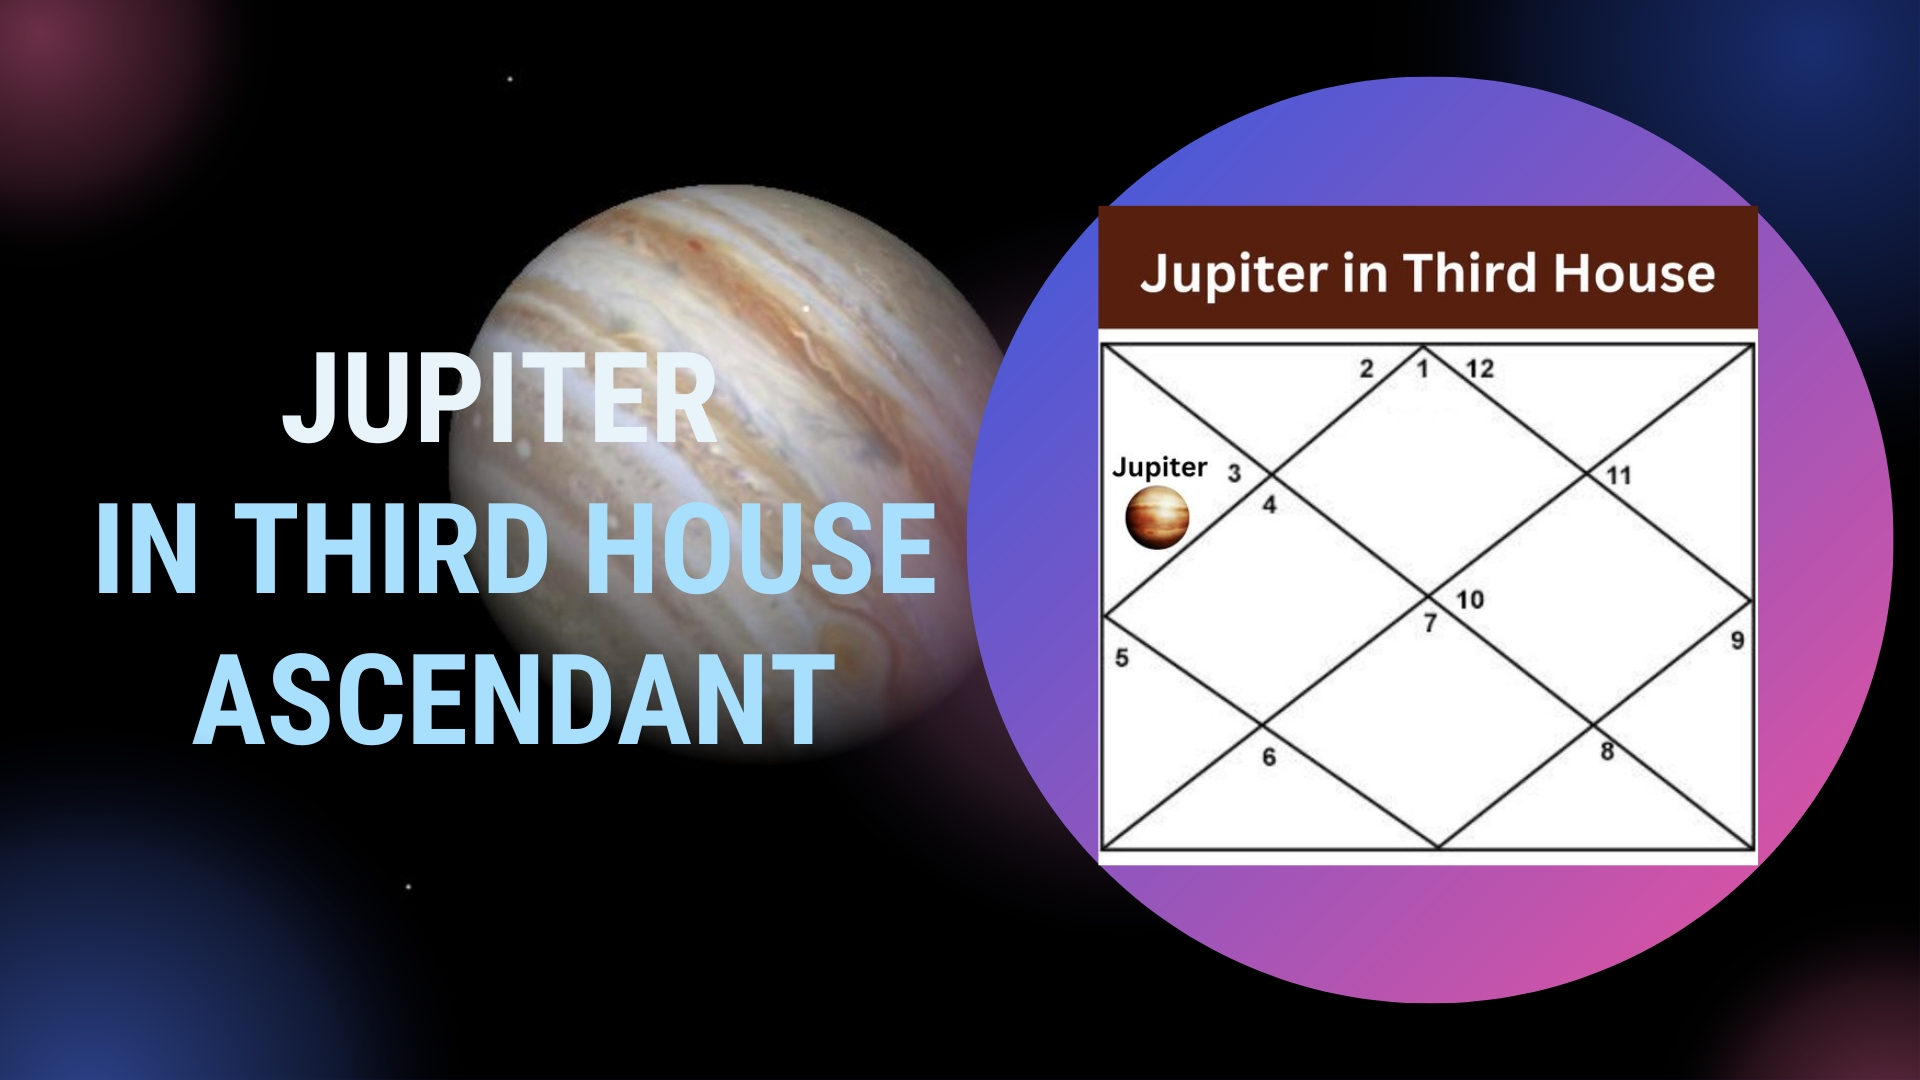 Jupiter in Third House Ascendant